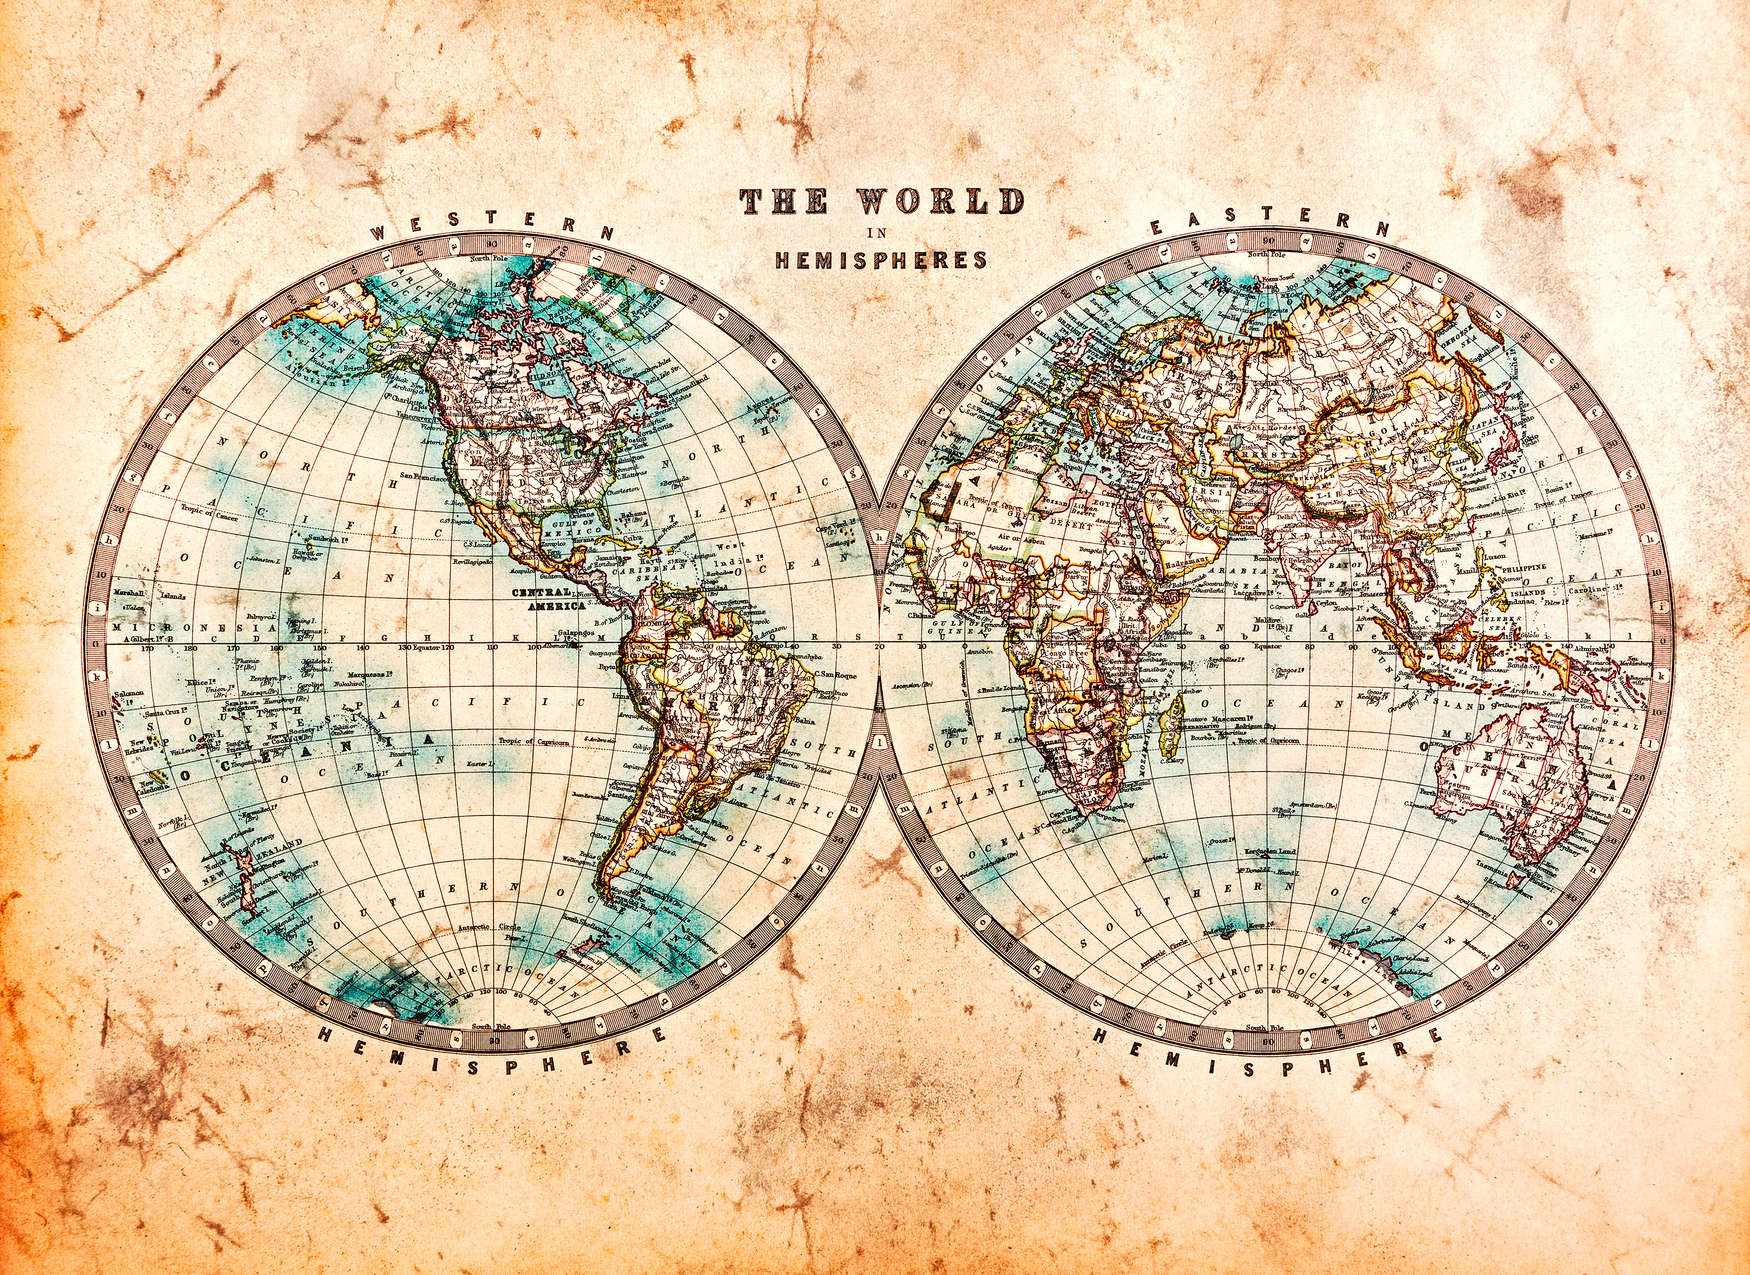             Vintage World Map in Hemispheres - Brown, Beige, Blue
        